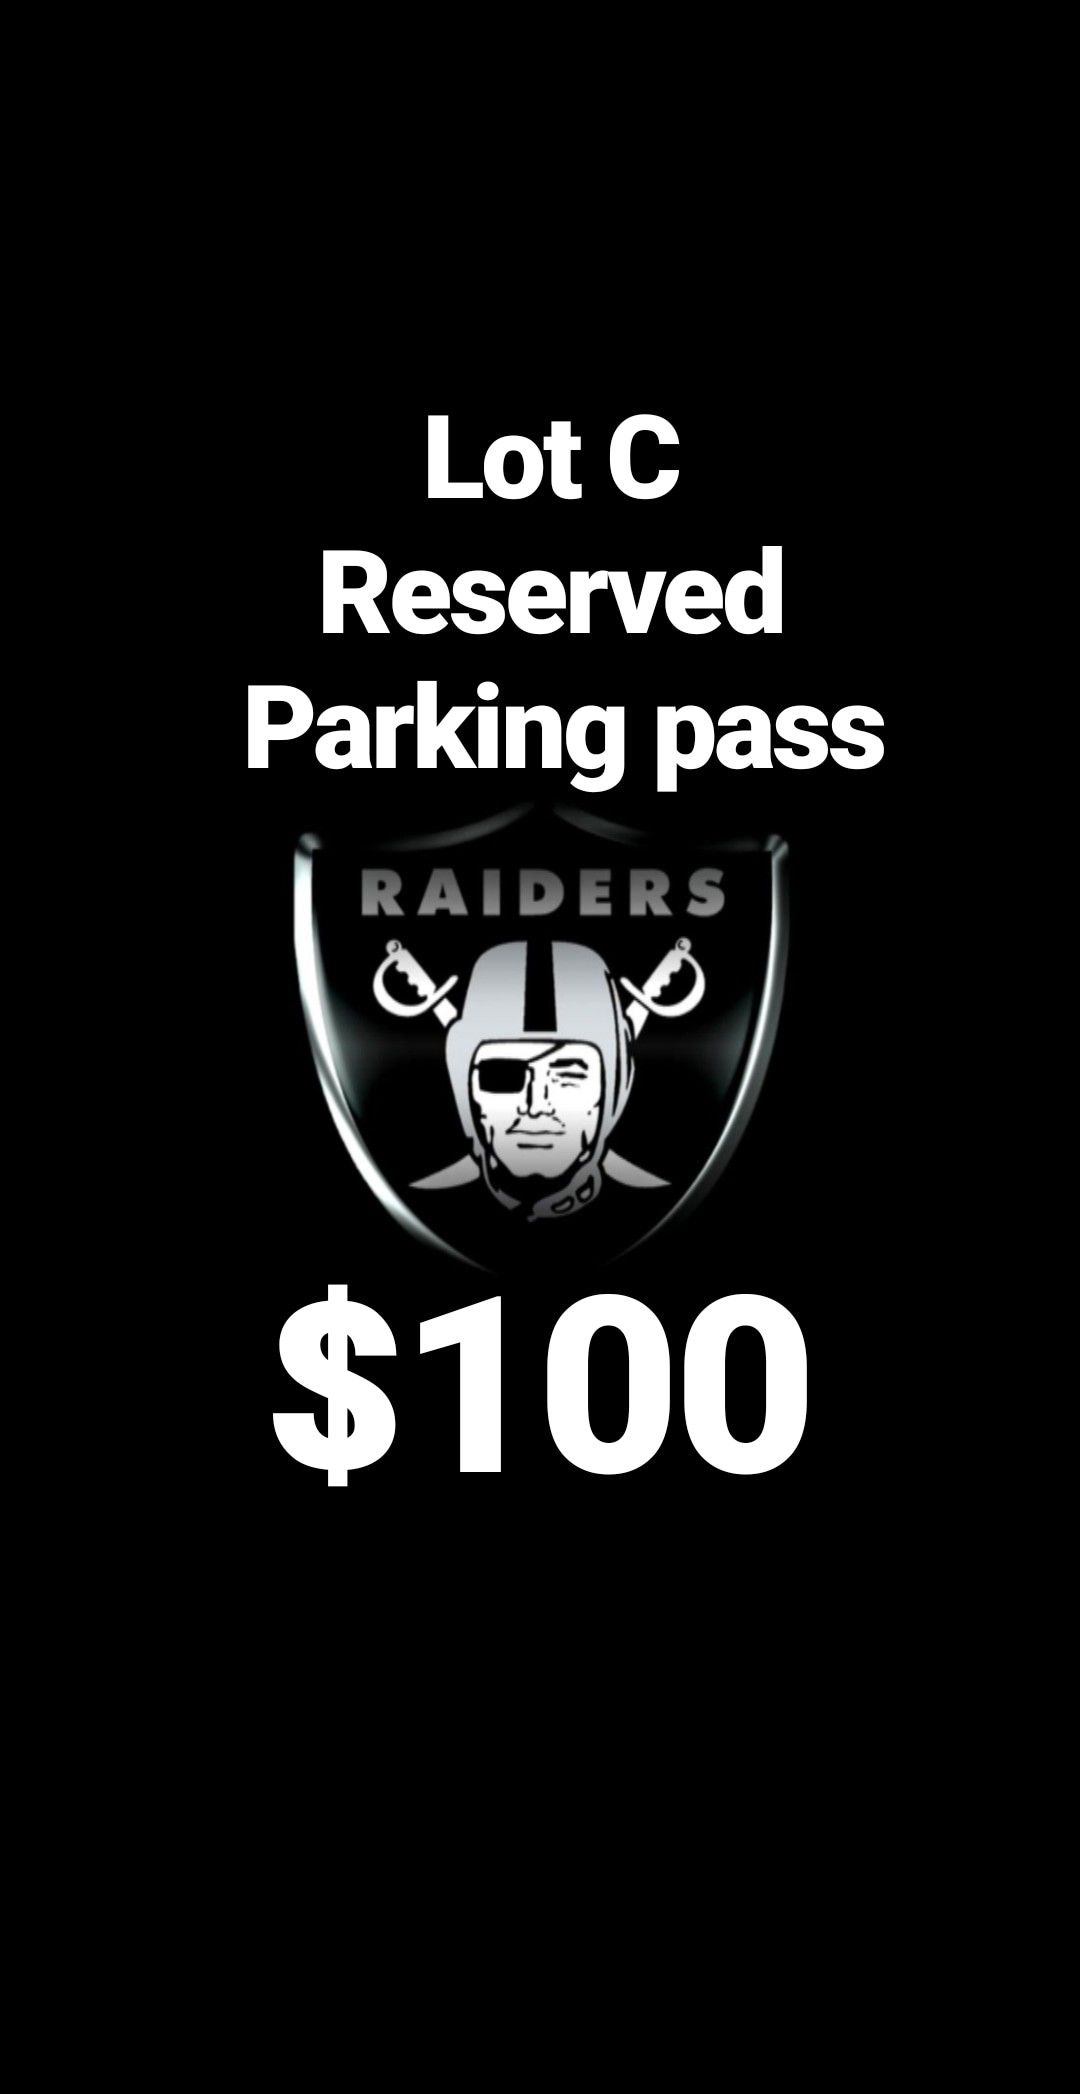 Raiders parking pass